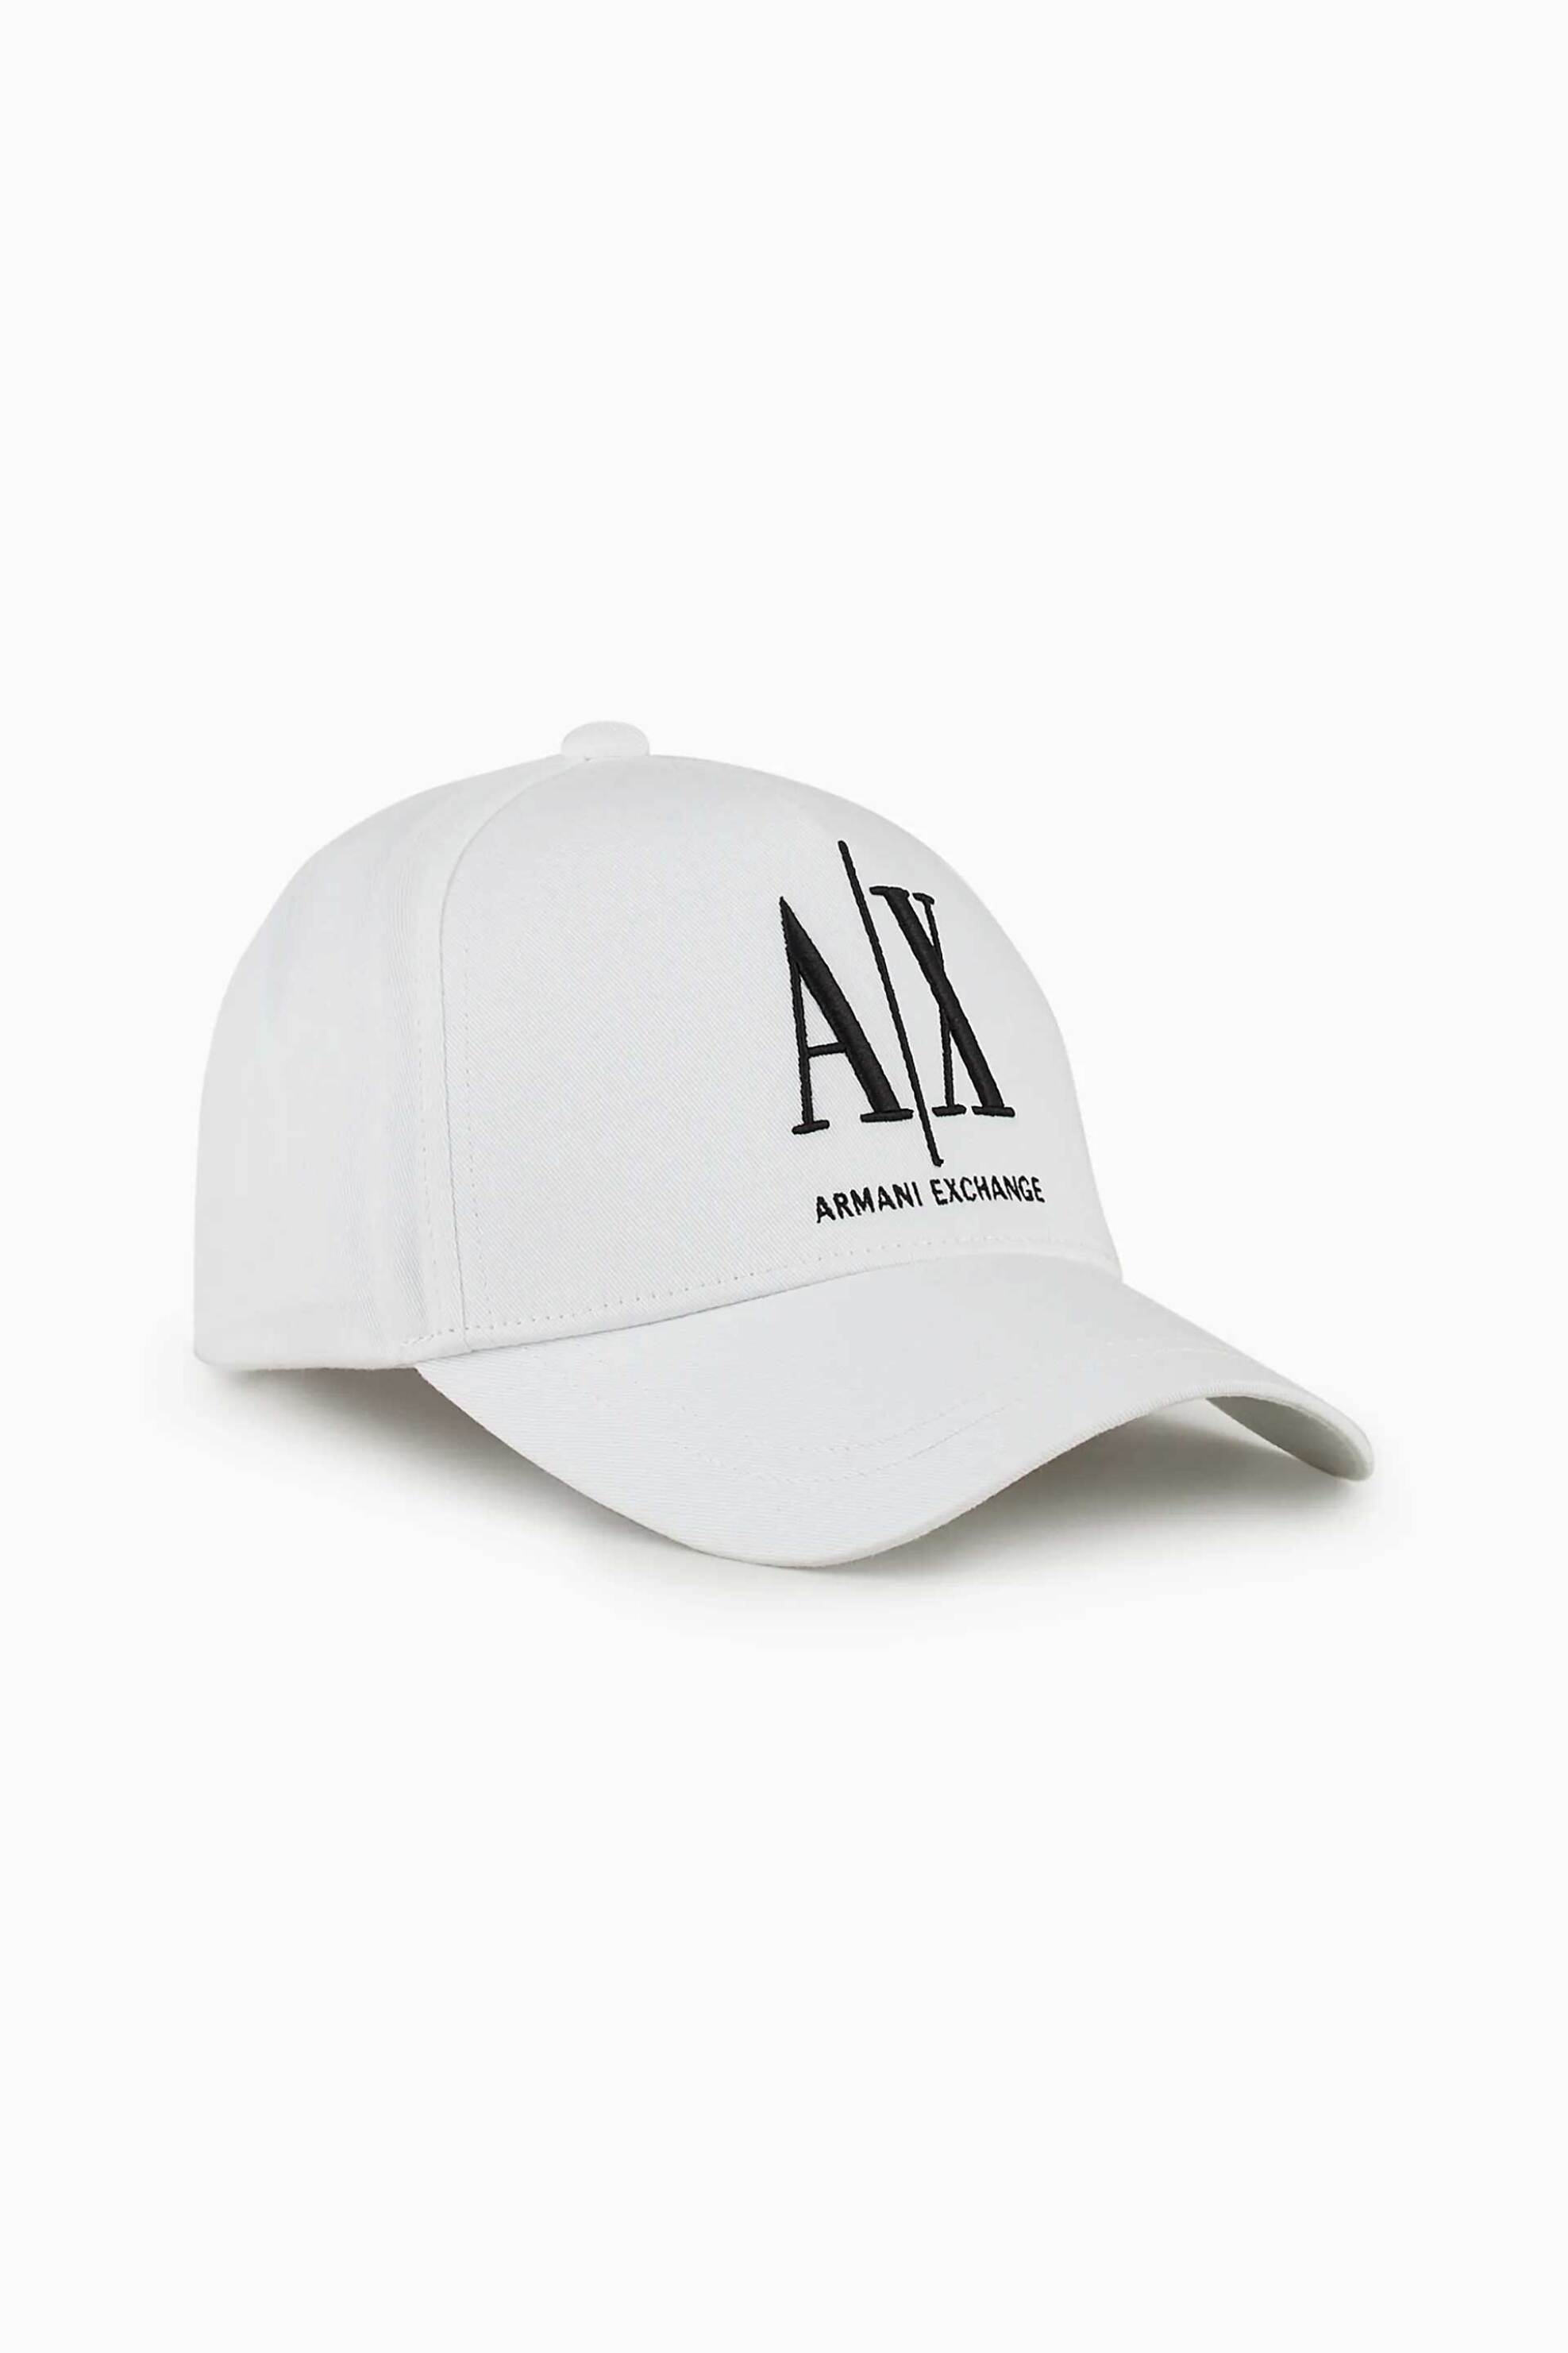 Ανδρική Μόδα > Ανδρικά Αξεσουάρ > Ανδρικά Καπέλα & Σκούφοι Armani Exchange ανδρικό καπέλο με κεντημένο λογότυπο - 954047CC811 Λευκό